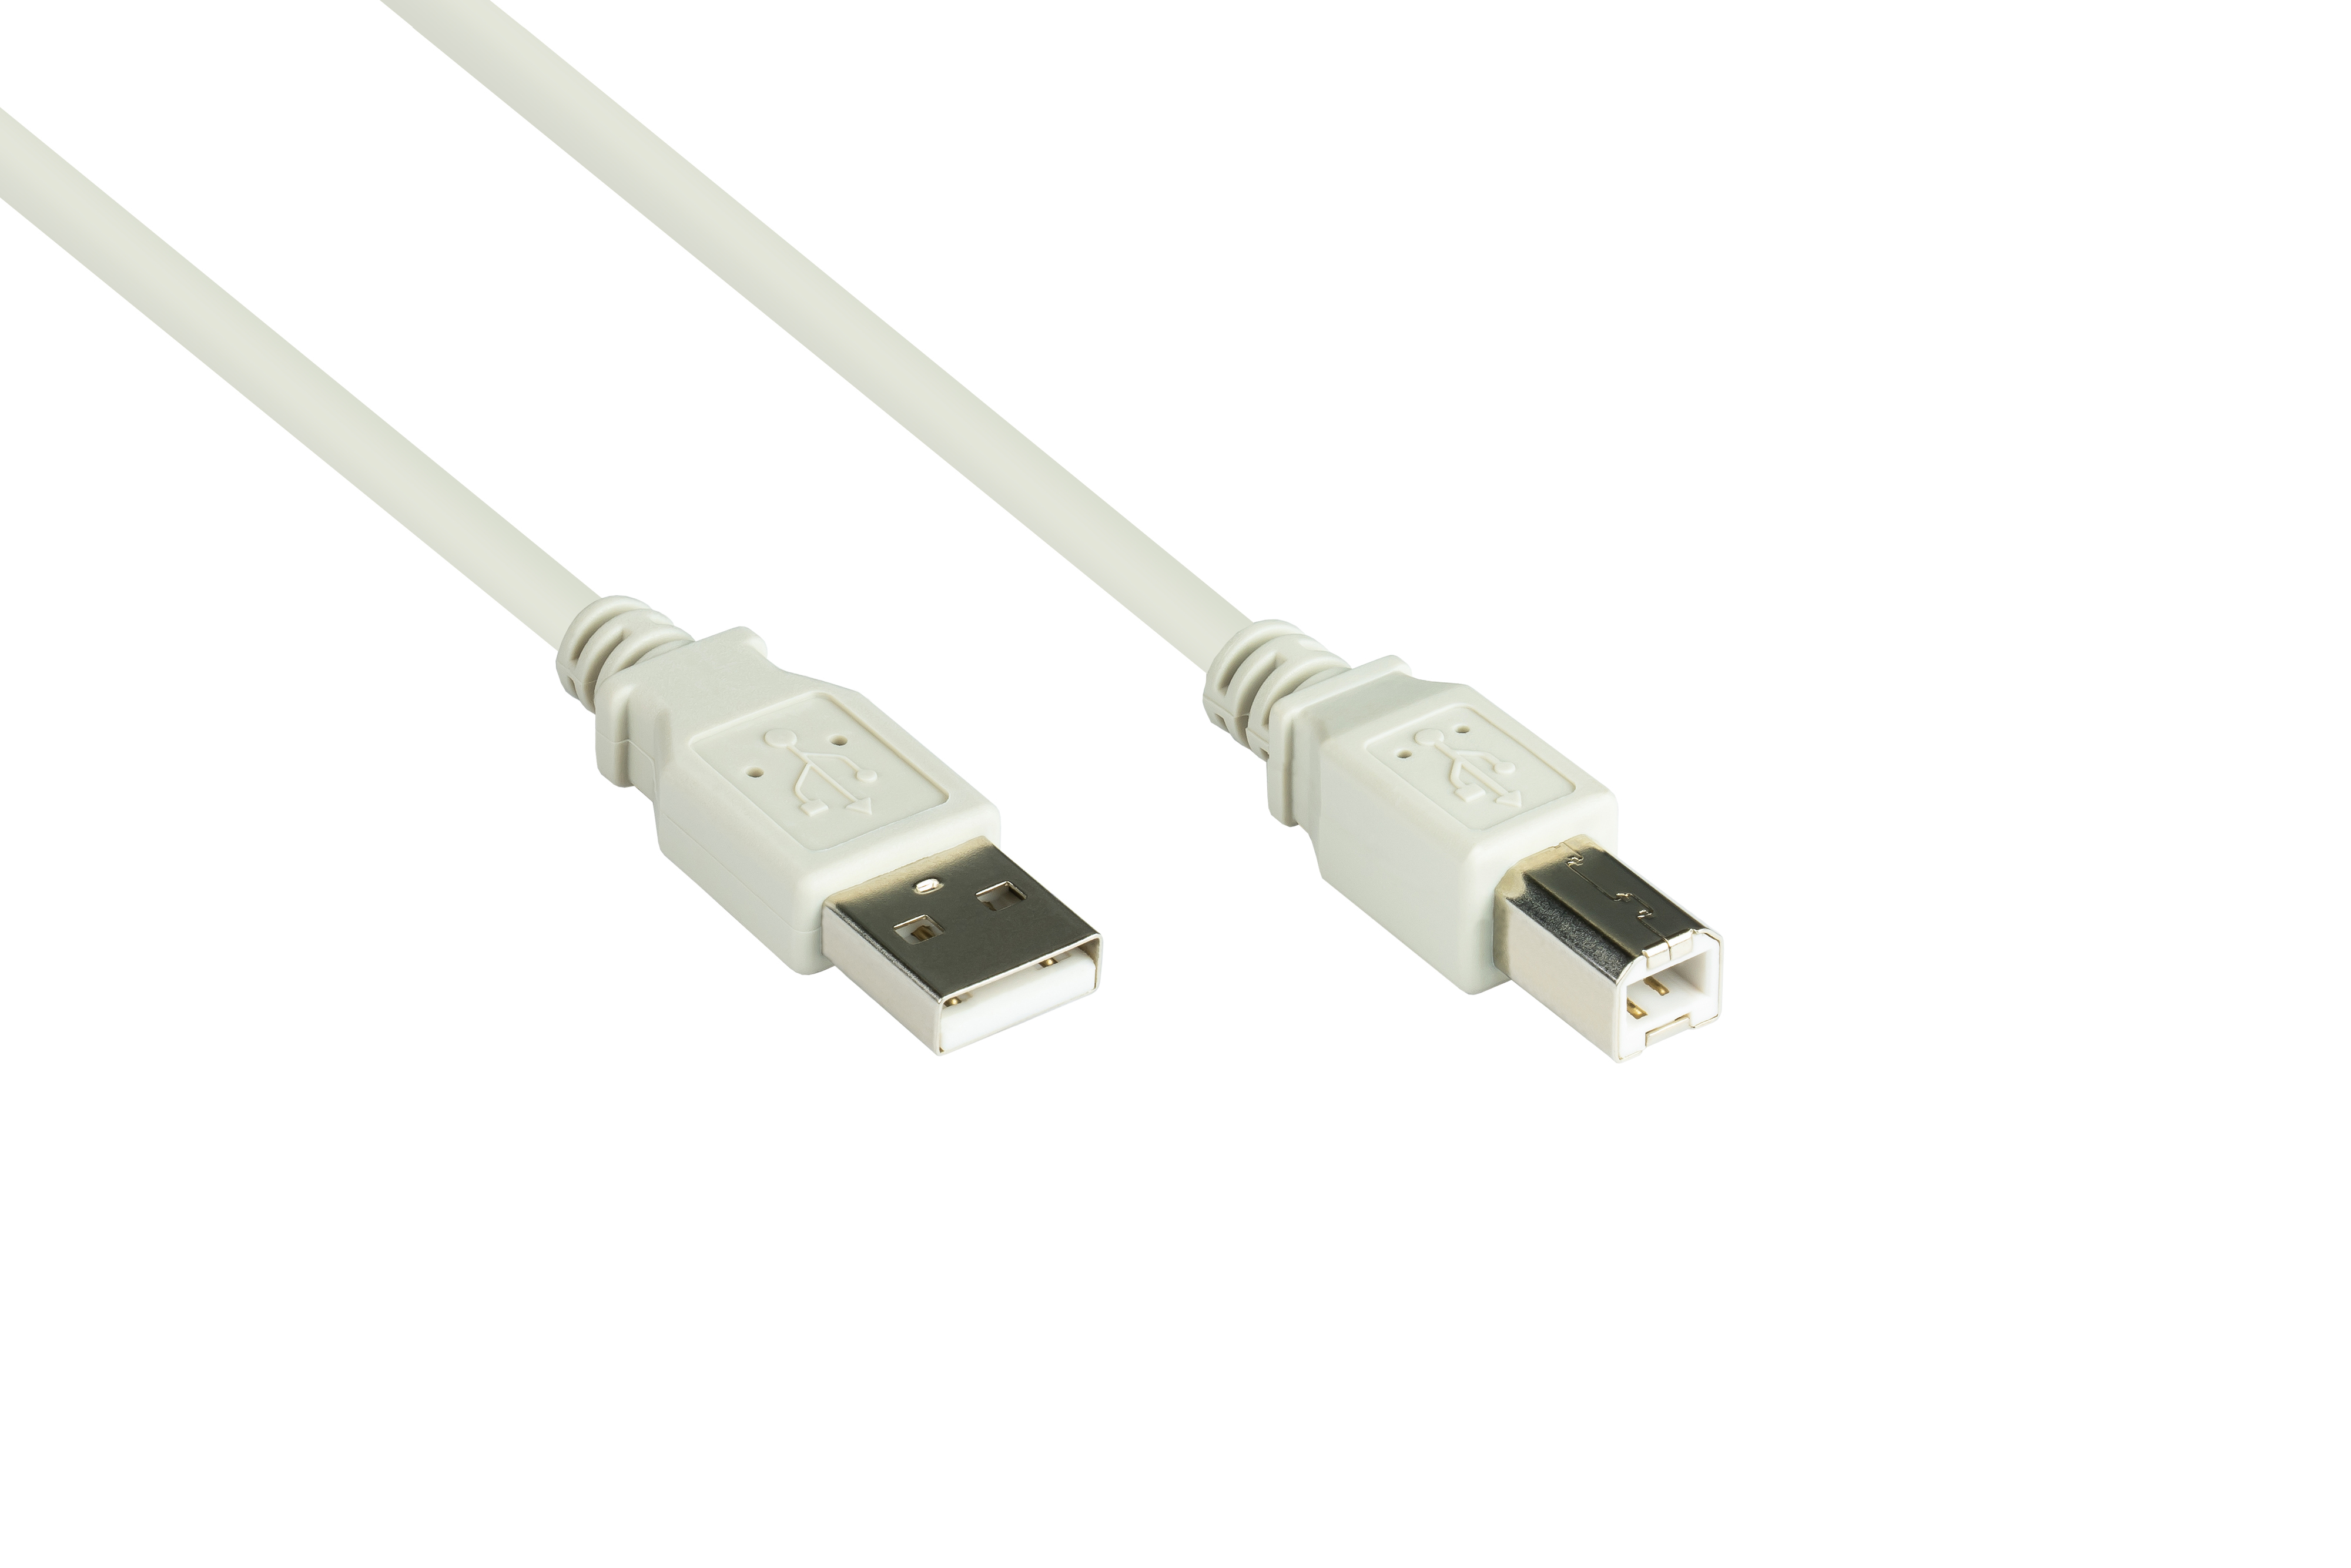 USB GOOD A an grau CONNECTIONS 2.0 Stecker Stecker B, Anschlusskabel